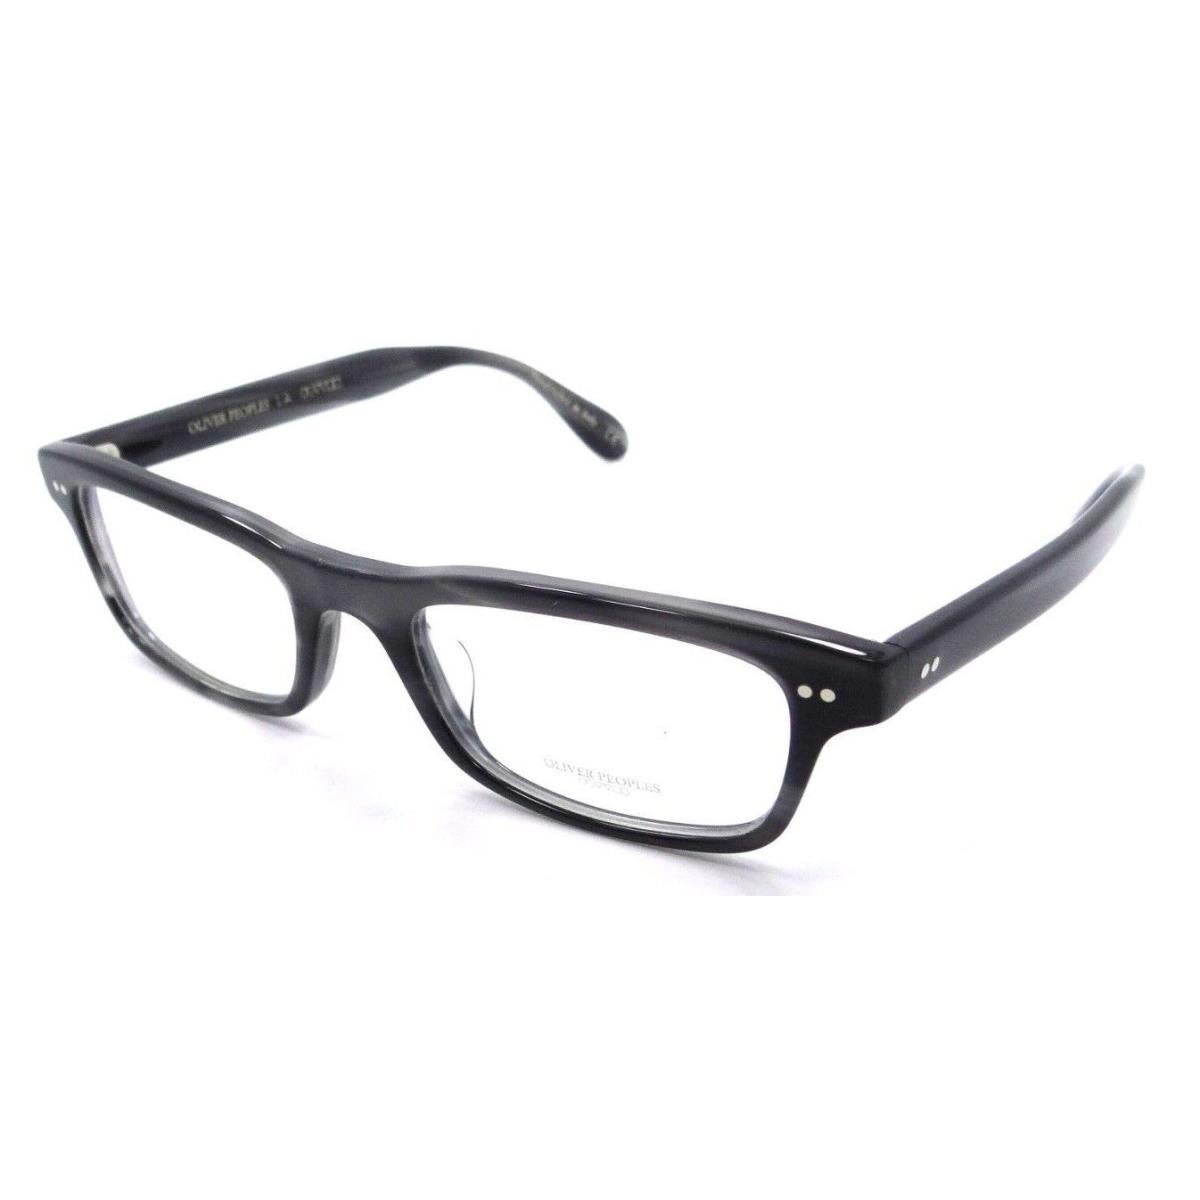 Oliver Peoples Eyeglasses Frames OV5396U 1661 51-19-145 Calvet Charcoal Tortoise - Multicolor Frame